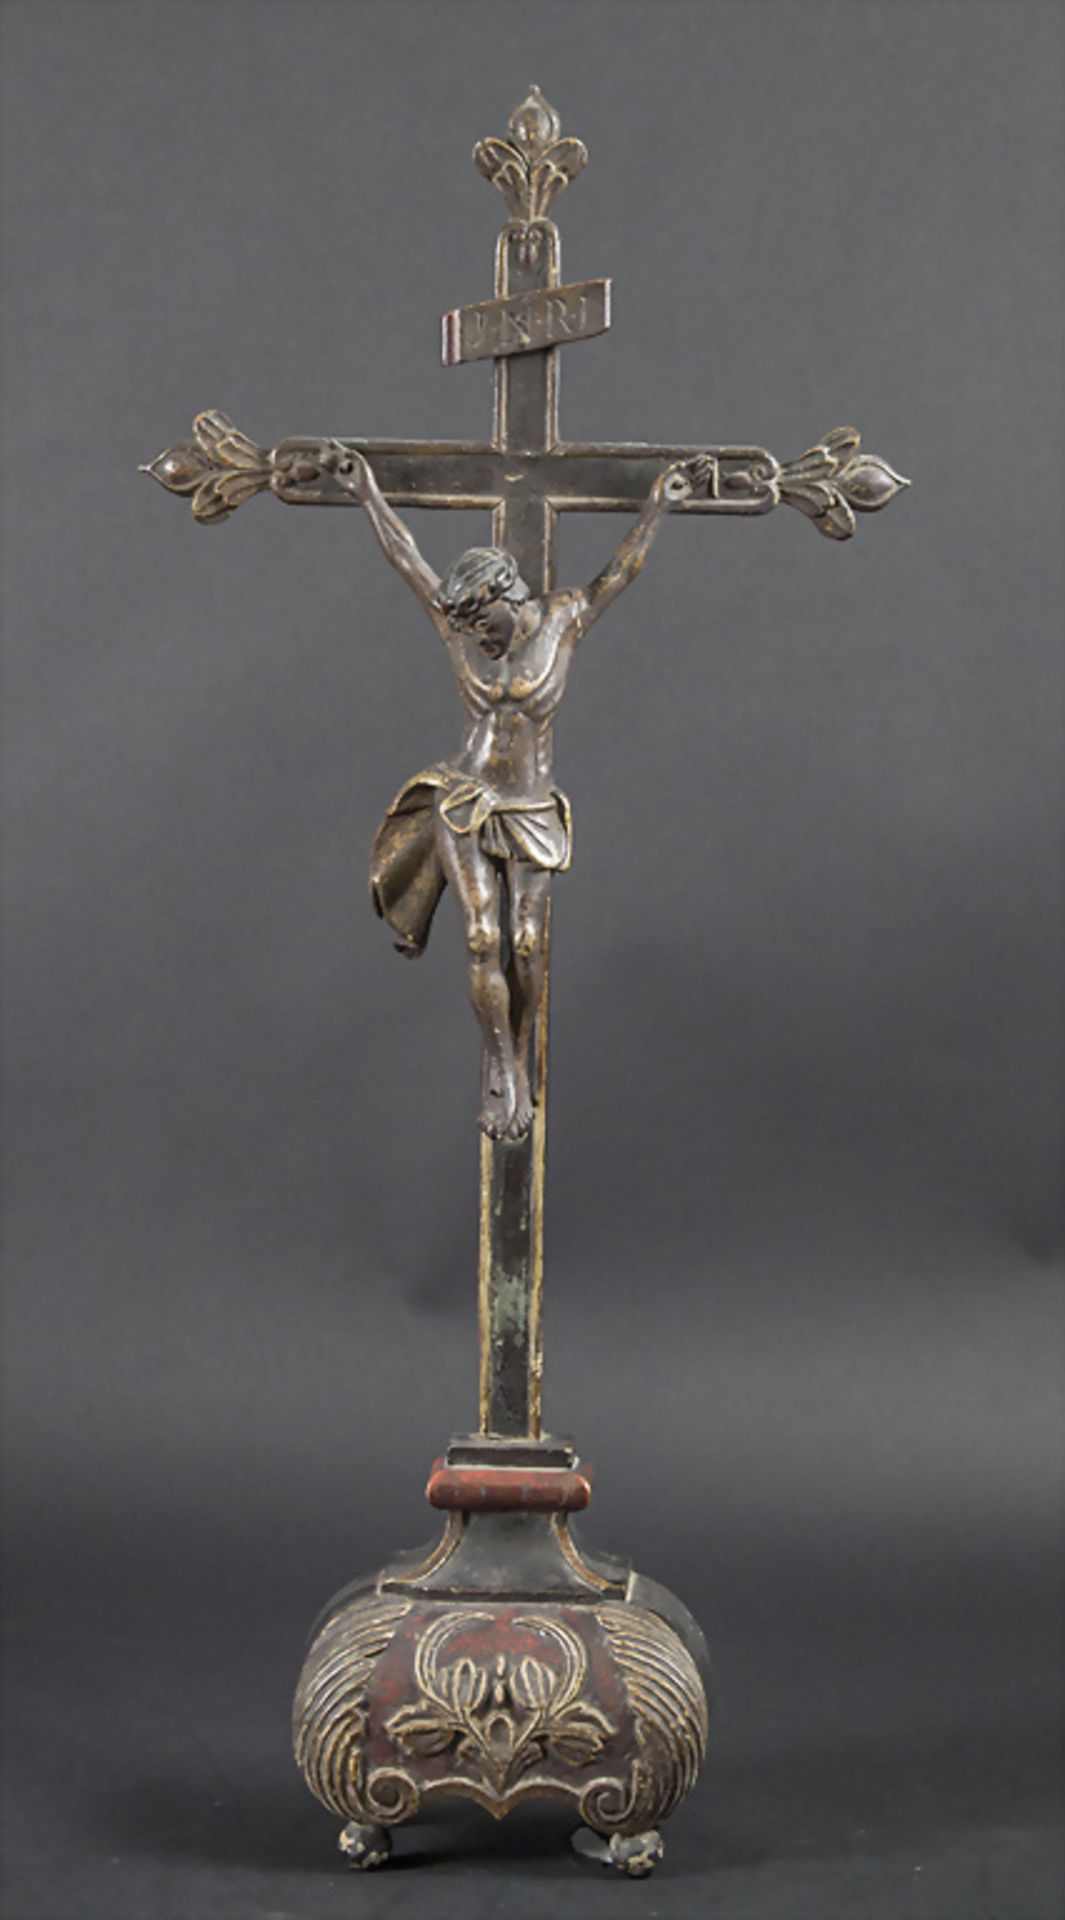 Barockes Standkreuz Kruzifix / A Baroque wooden standing cross crucifix, 18. Jh.